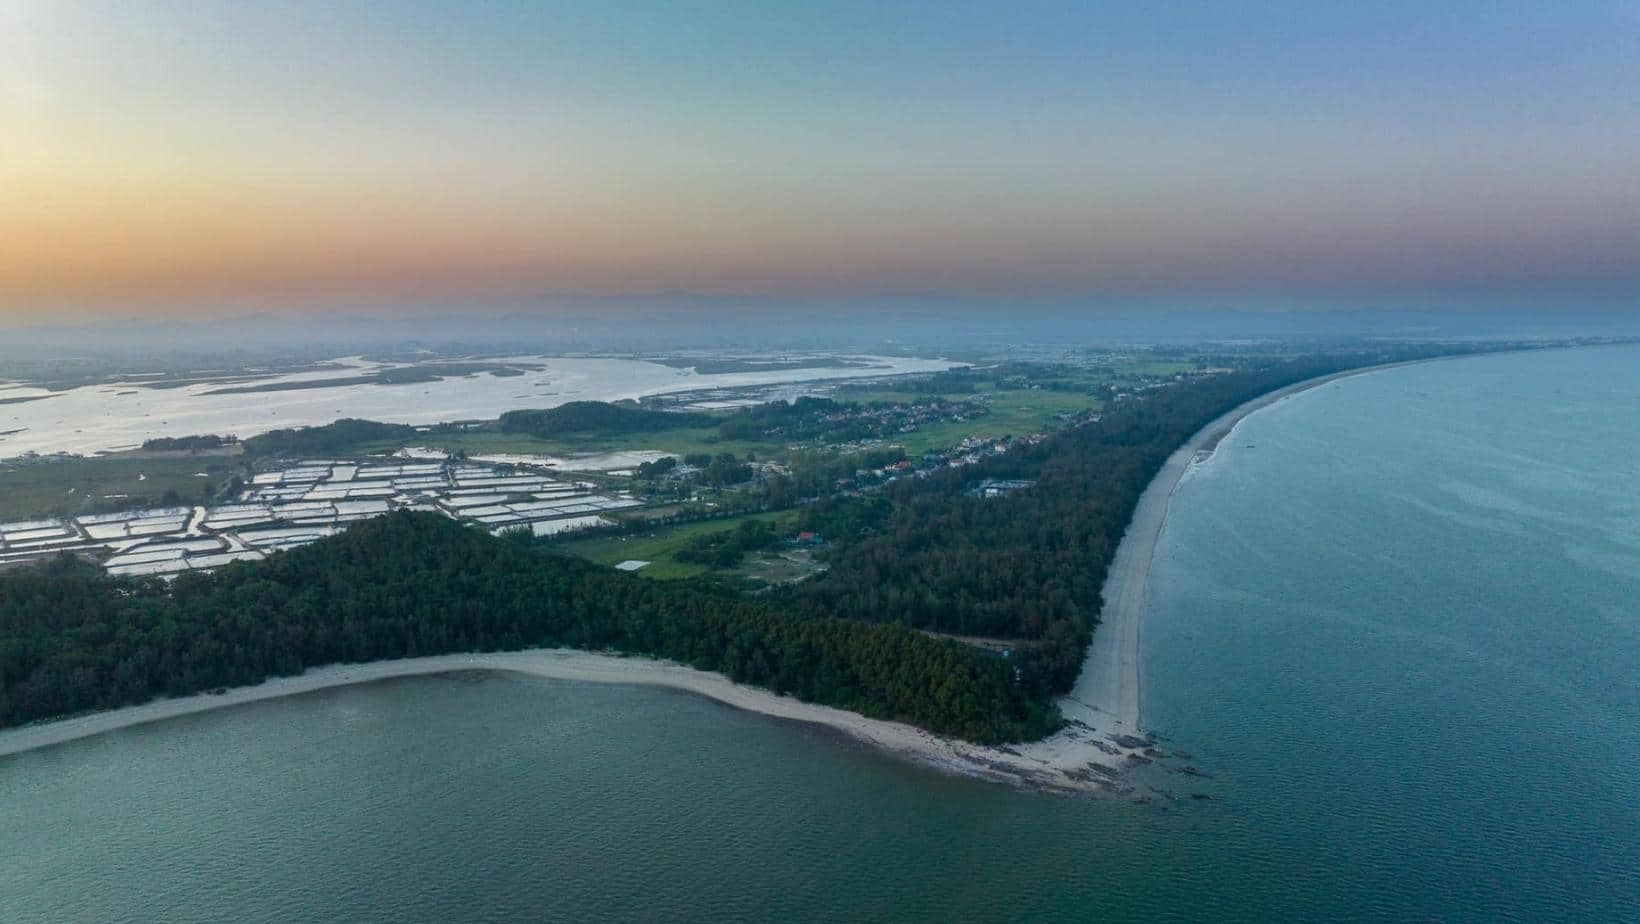 Khám phá Bãi biển Đá Đen - Tắm biển Móng Cái, tỉnh Quảng Ninh 